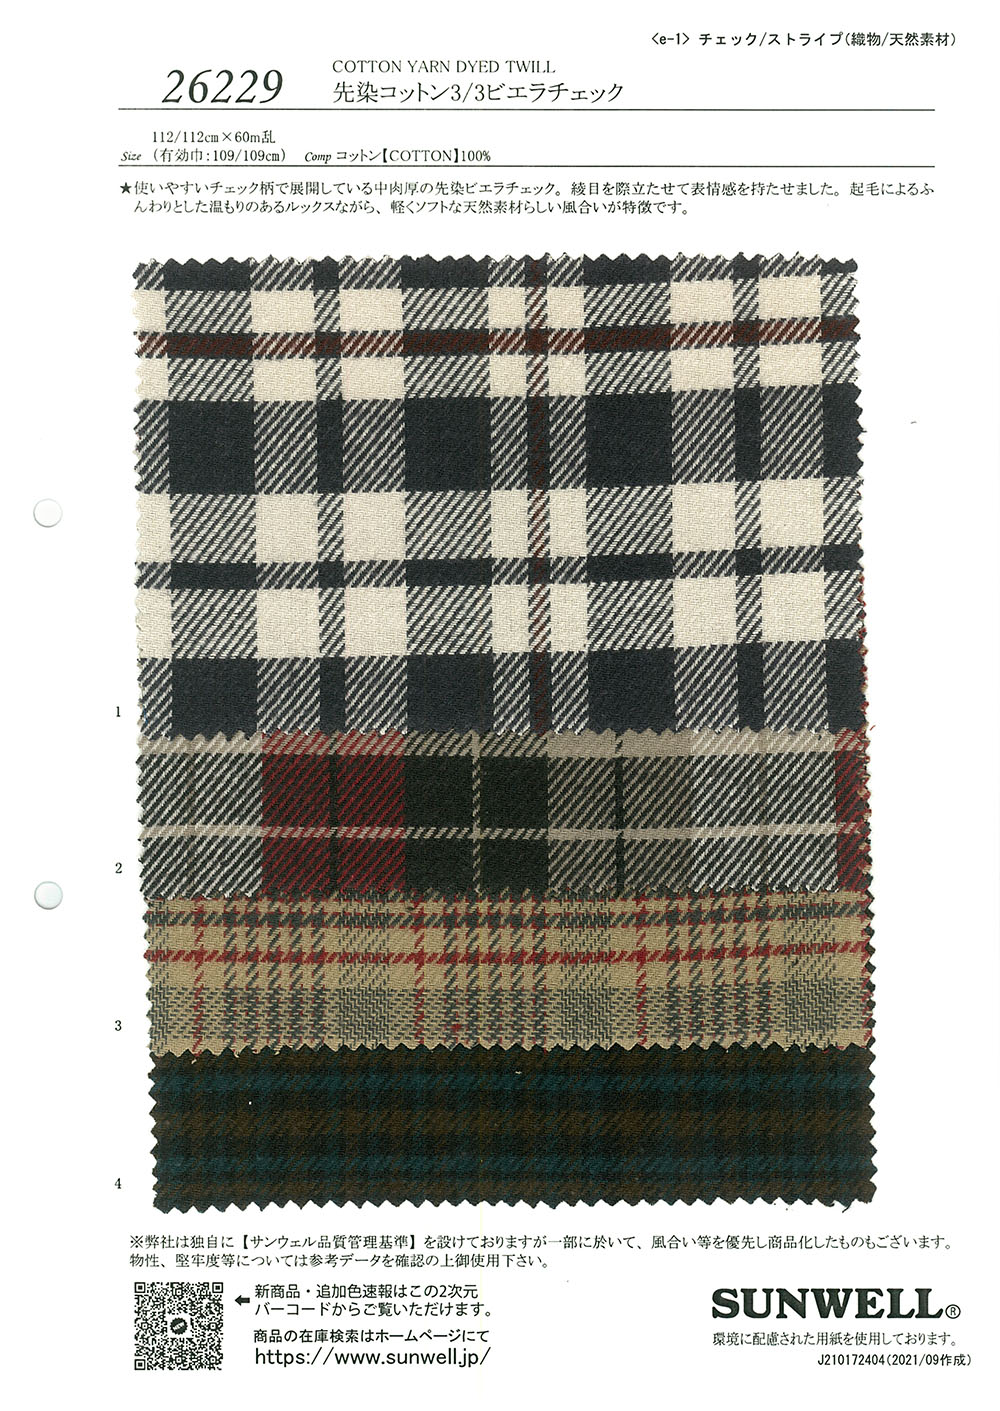 26229 Yarn Dyed Cotton 3/3 Viyella Check[Textile / Fabric] SUNWELL